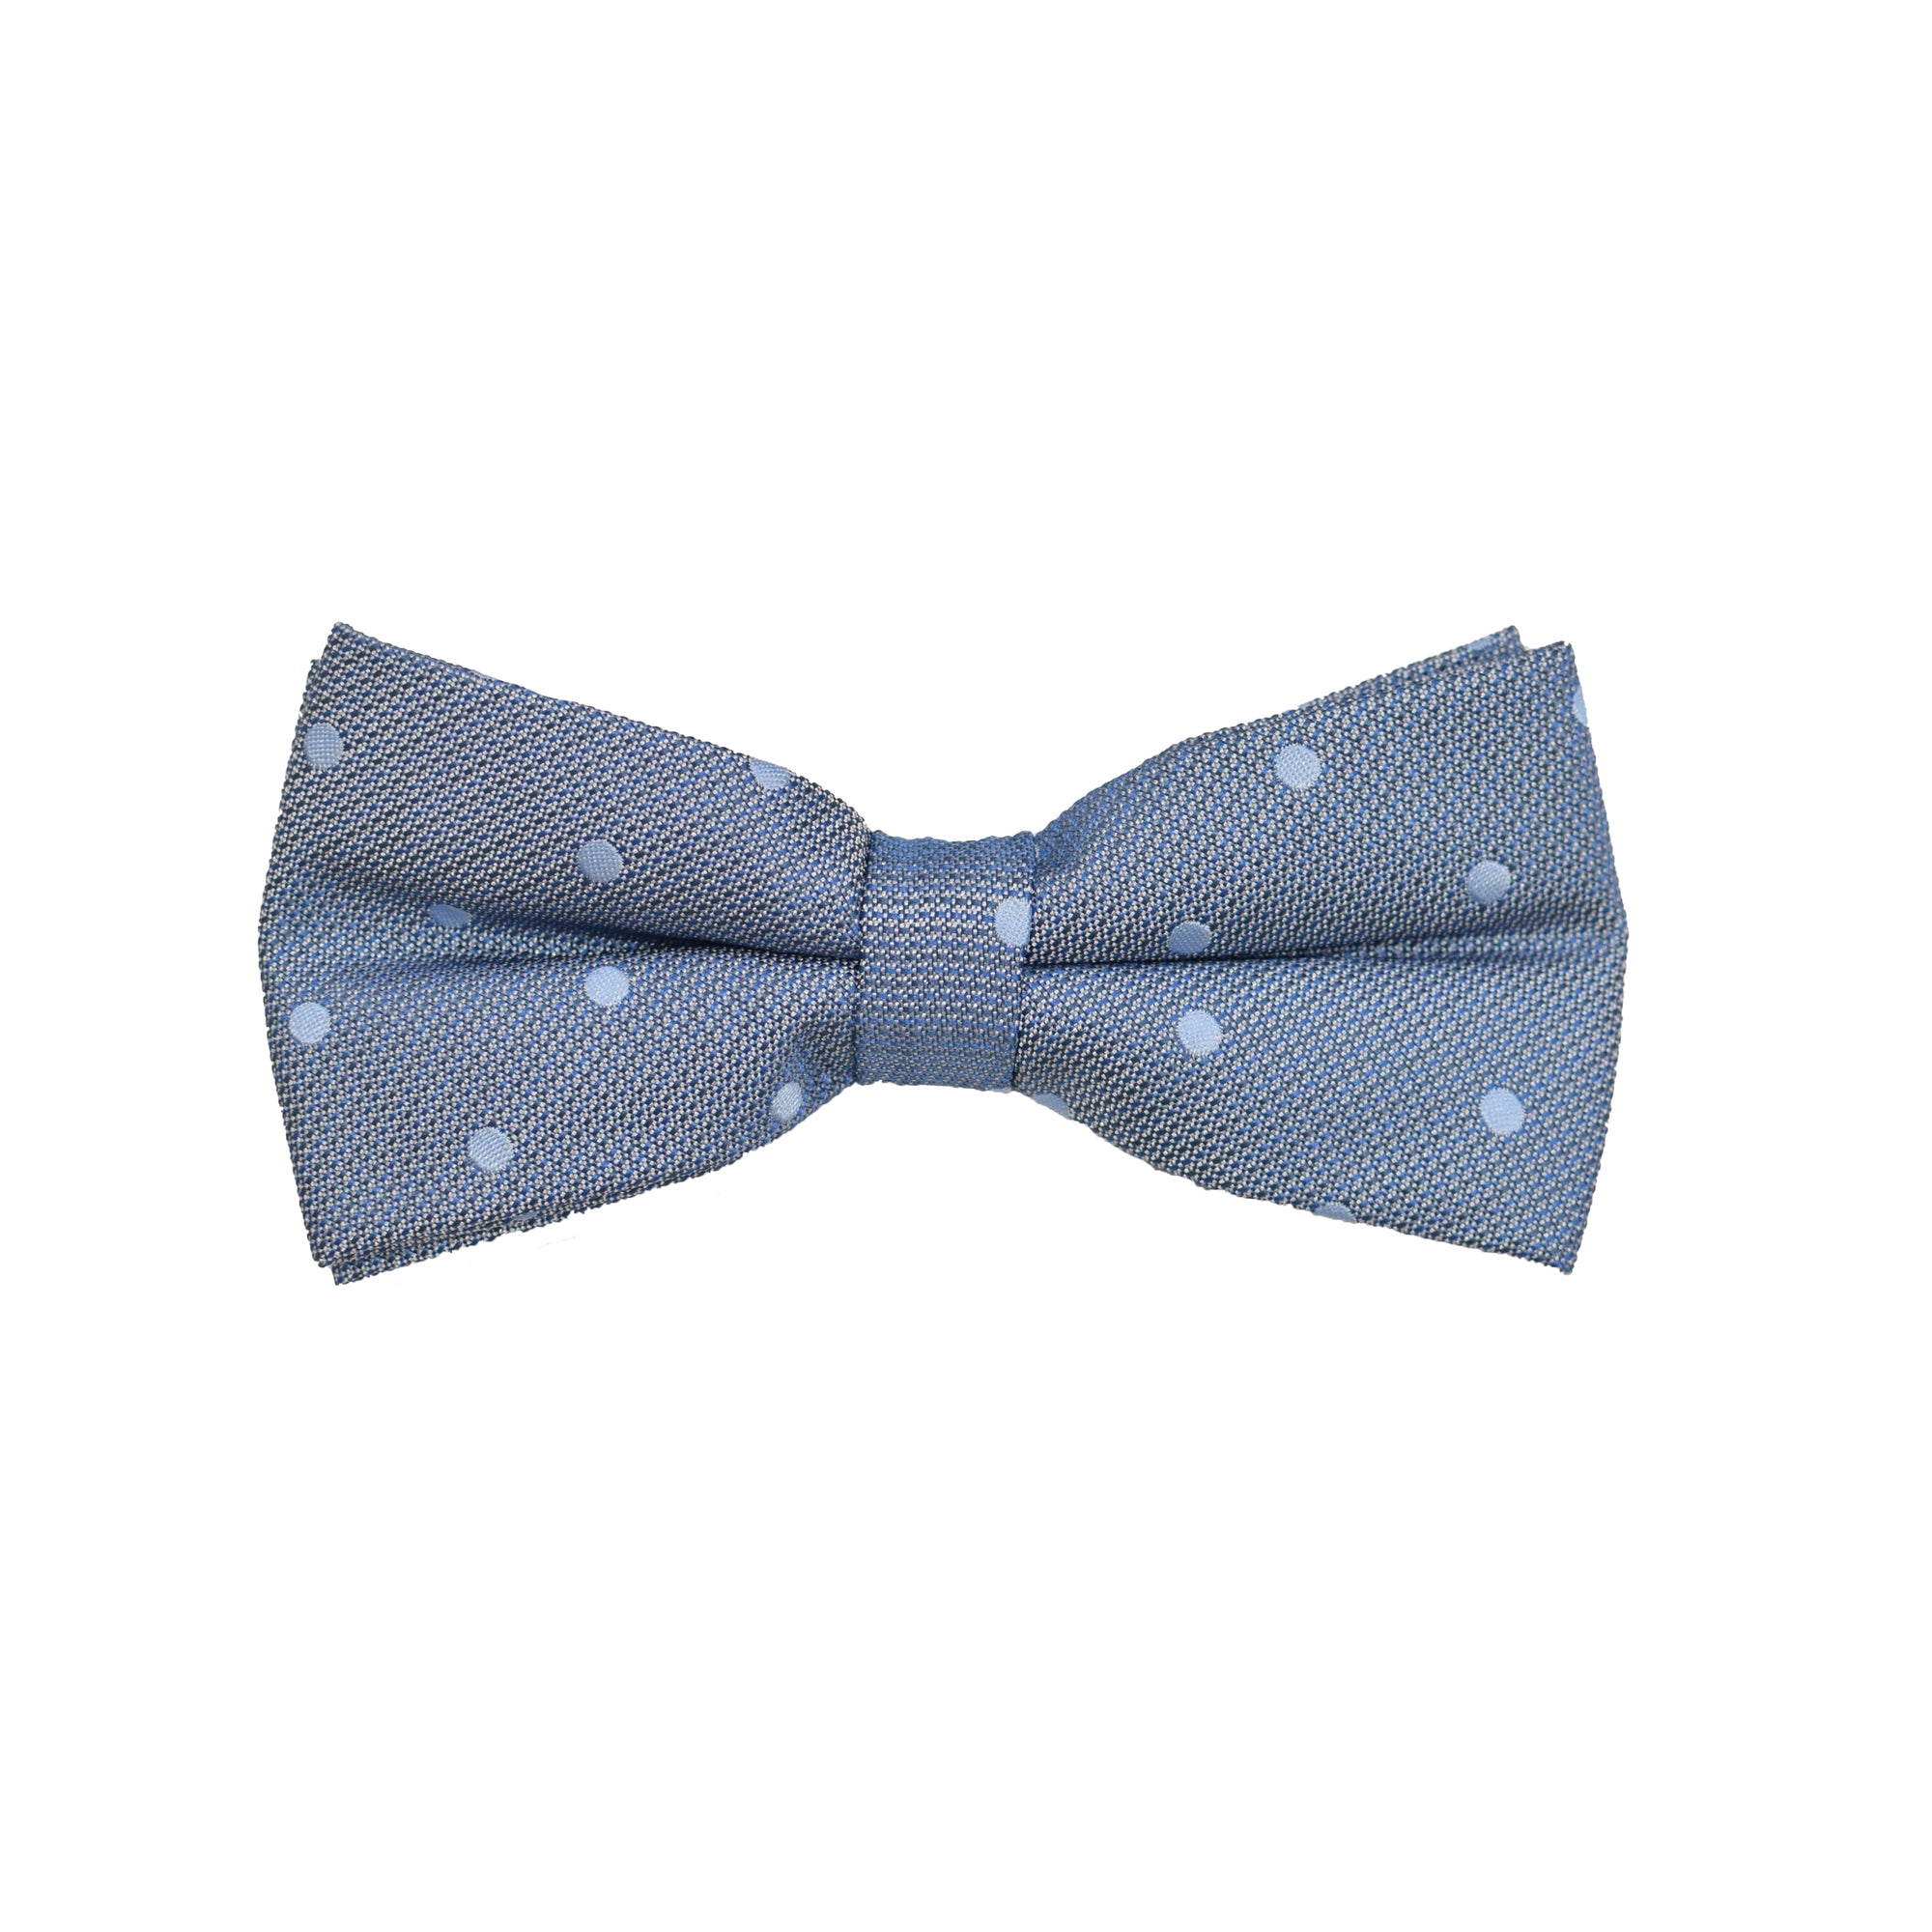 Bow Tie - Stone Grey Blue Polkadot